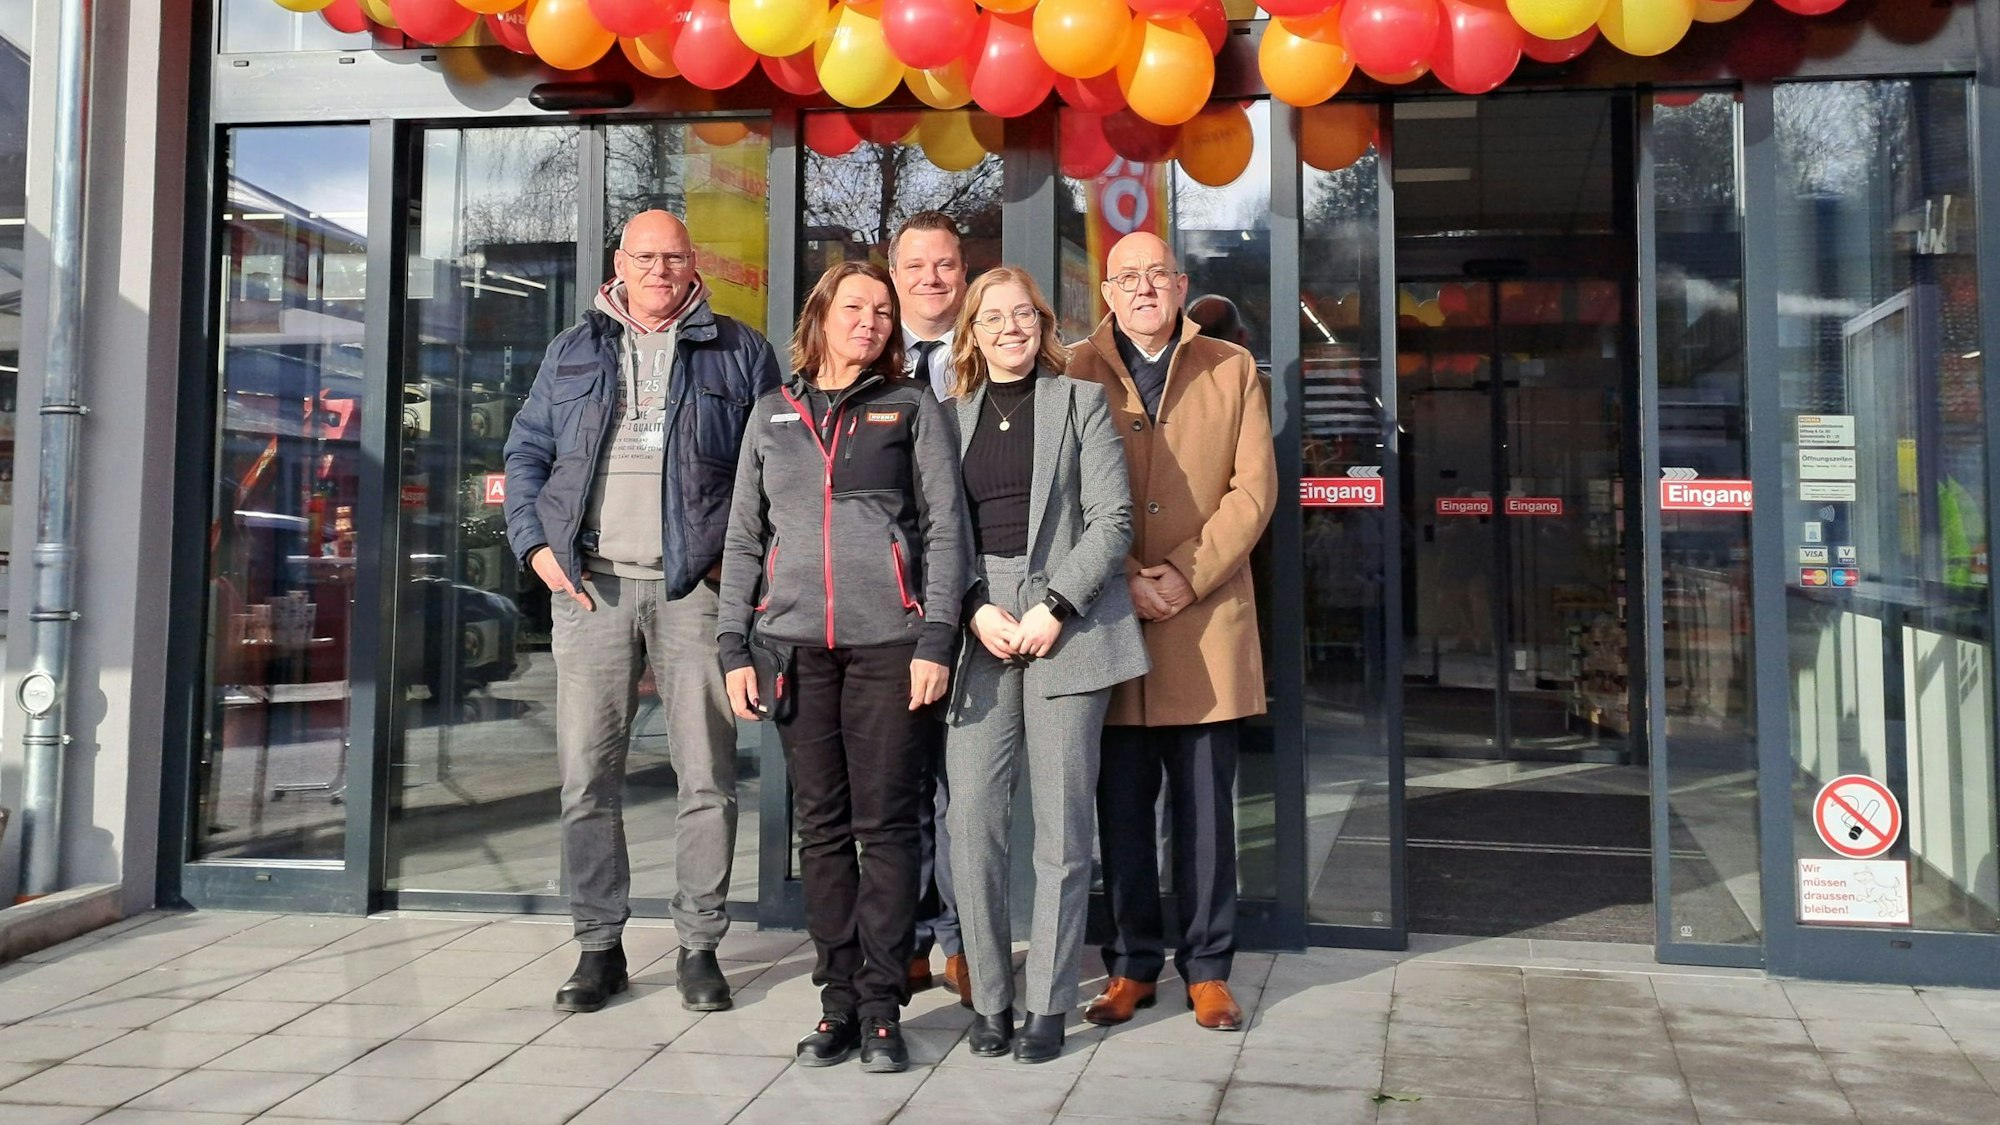 Hans-Dieter Kolb, Antonia Pauls, Markus Wirths, Alexandra Staub und Alfred Rausch (v.l.) stehen vor dem Norma-Markt, der Eingang ist mit rot-gelben Ballons geschmückt.